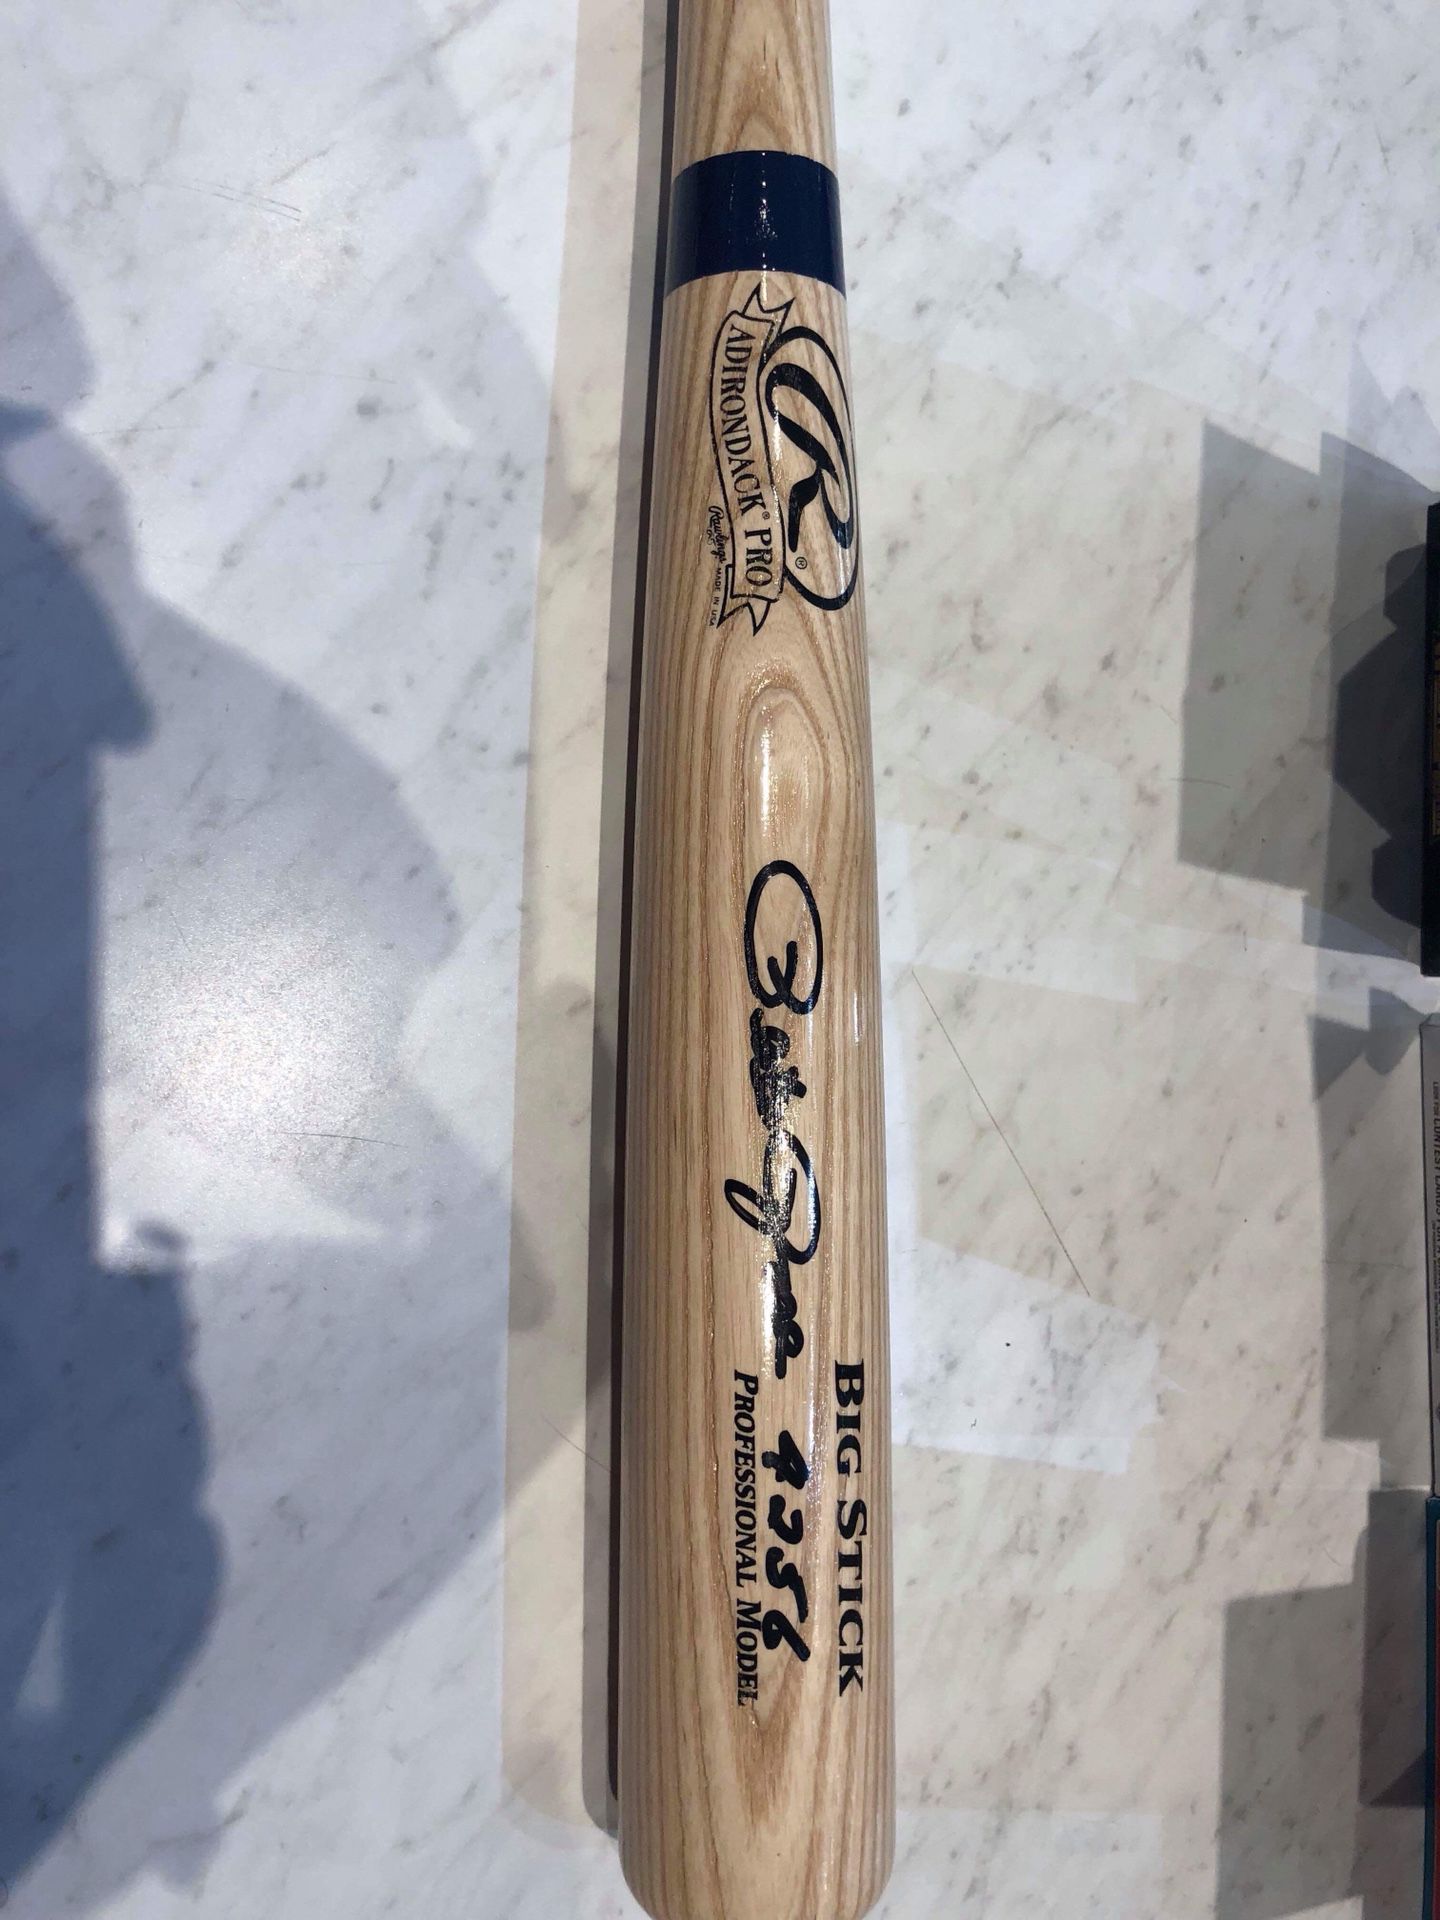 Pete rose autographed bat